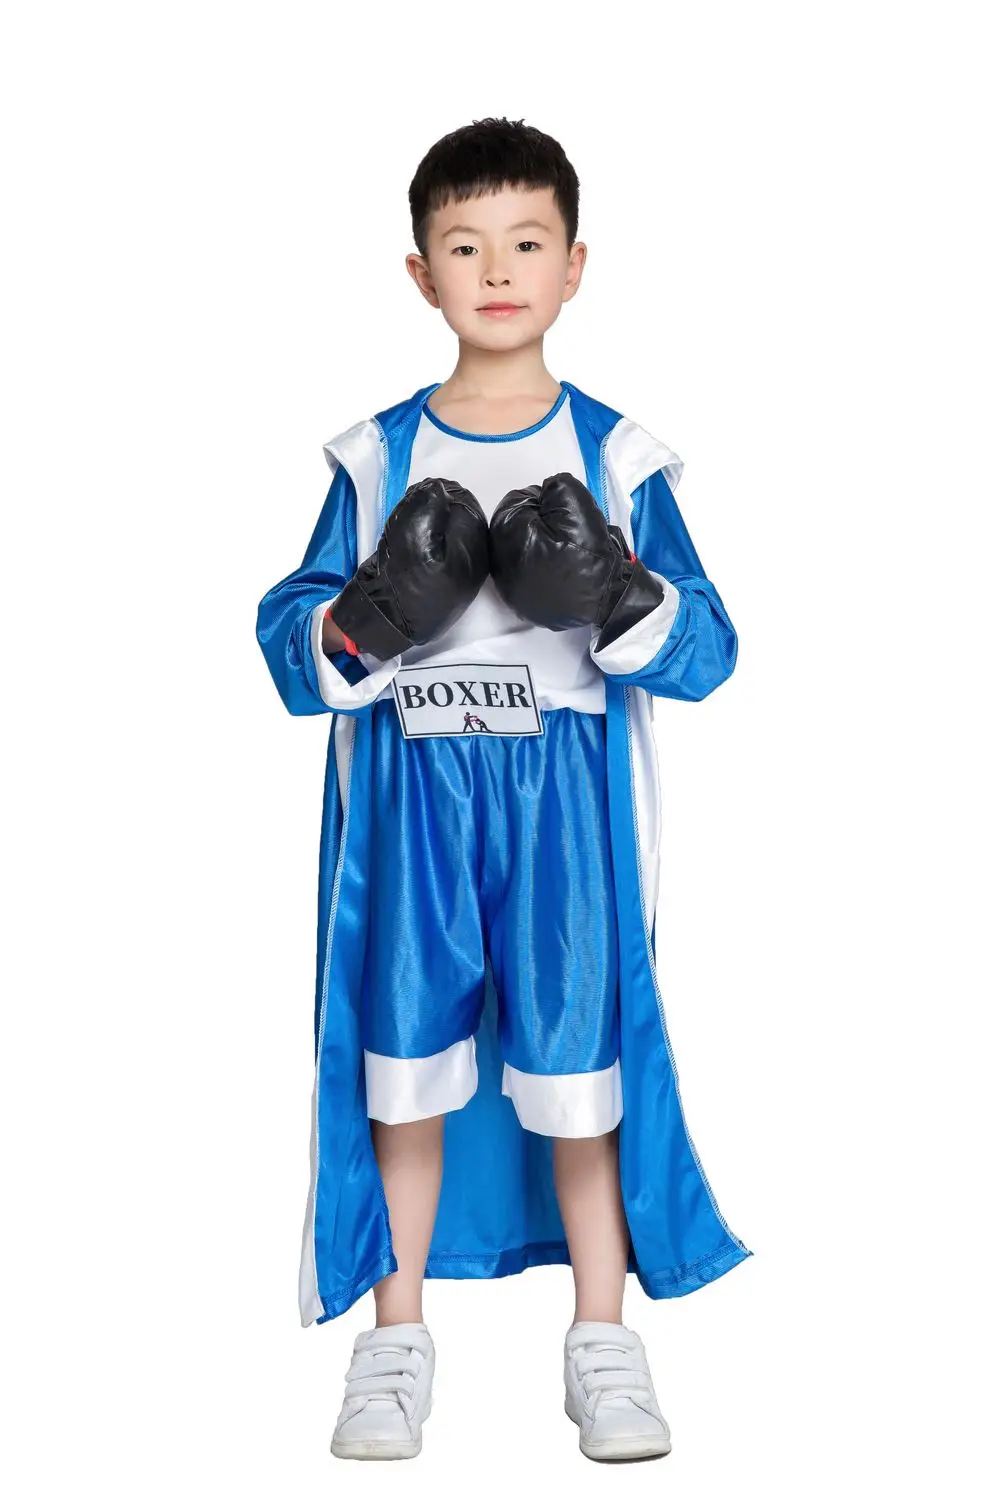 Детский костюм для мальчиков, красный, синий, Рокки Бальбоа боксерский костюм, одежда, комбинезон с накидкой, кино, боксерский халат, костюм для вечеринки